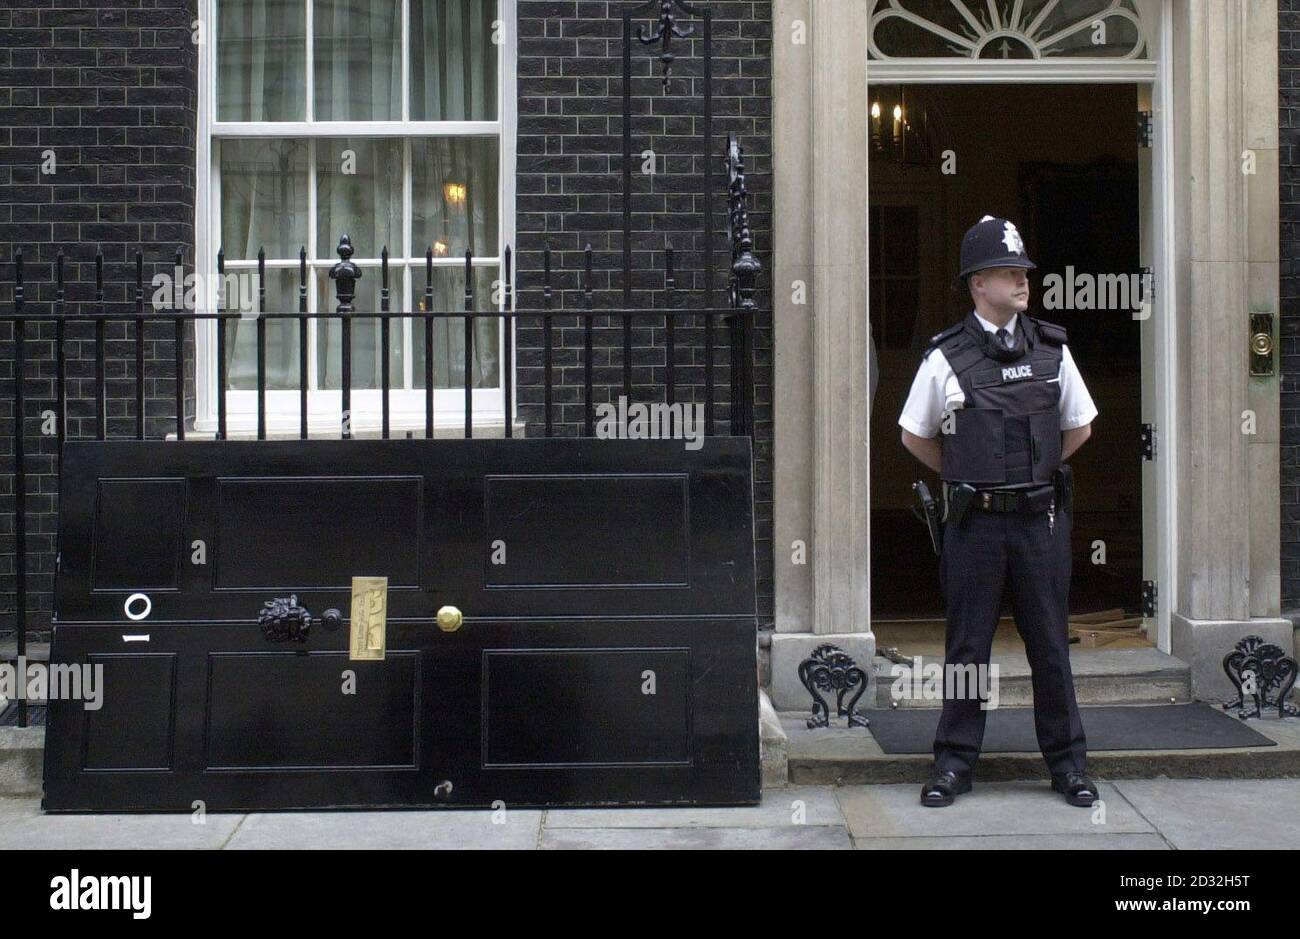 Die berühmte Eingangstür der Downing Street Nr. 10, der offiziellen Londoner Residenz des britischen Premierministers, wird für einen neuen Anstrich entfernt. Die Tür wird ein Jahr lang durch eine exakte Nachbildung ersetzt, wobei der Vorgang wiederholt wird. Stockfoto